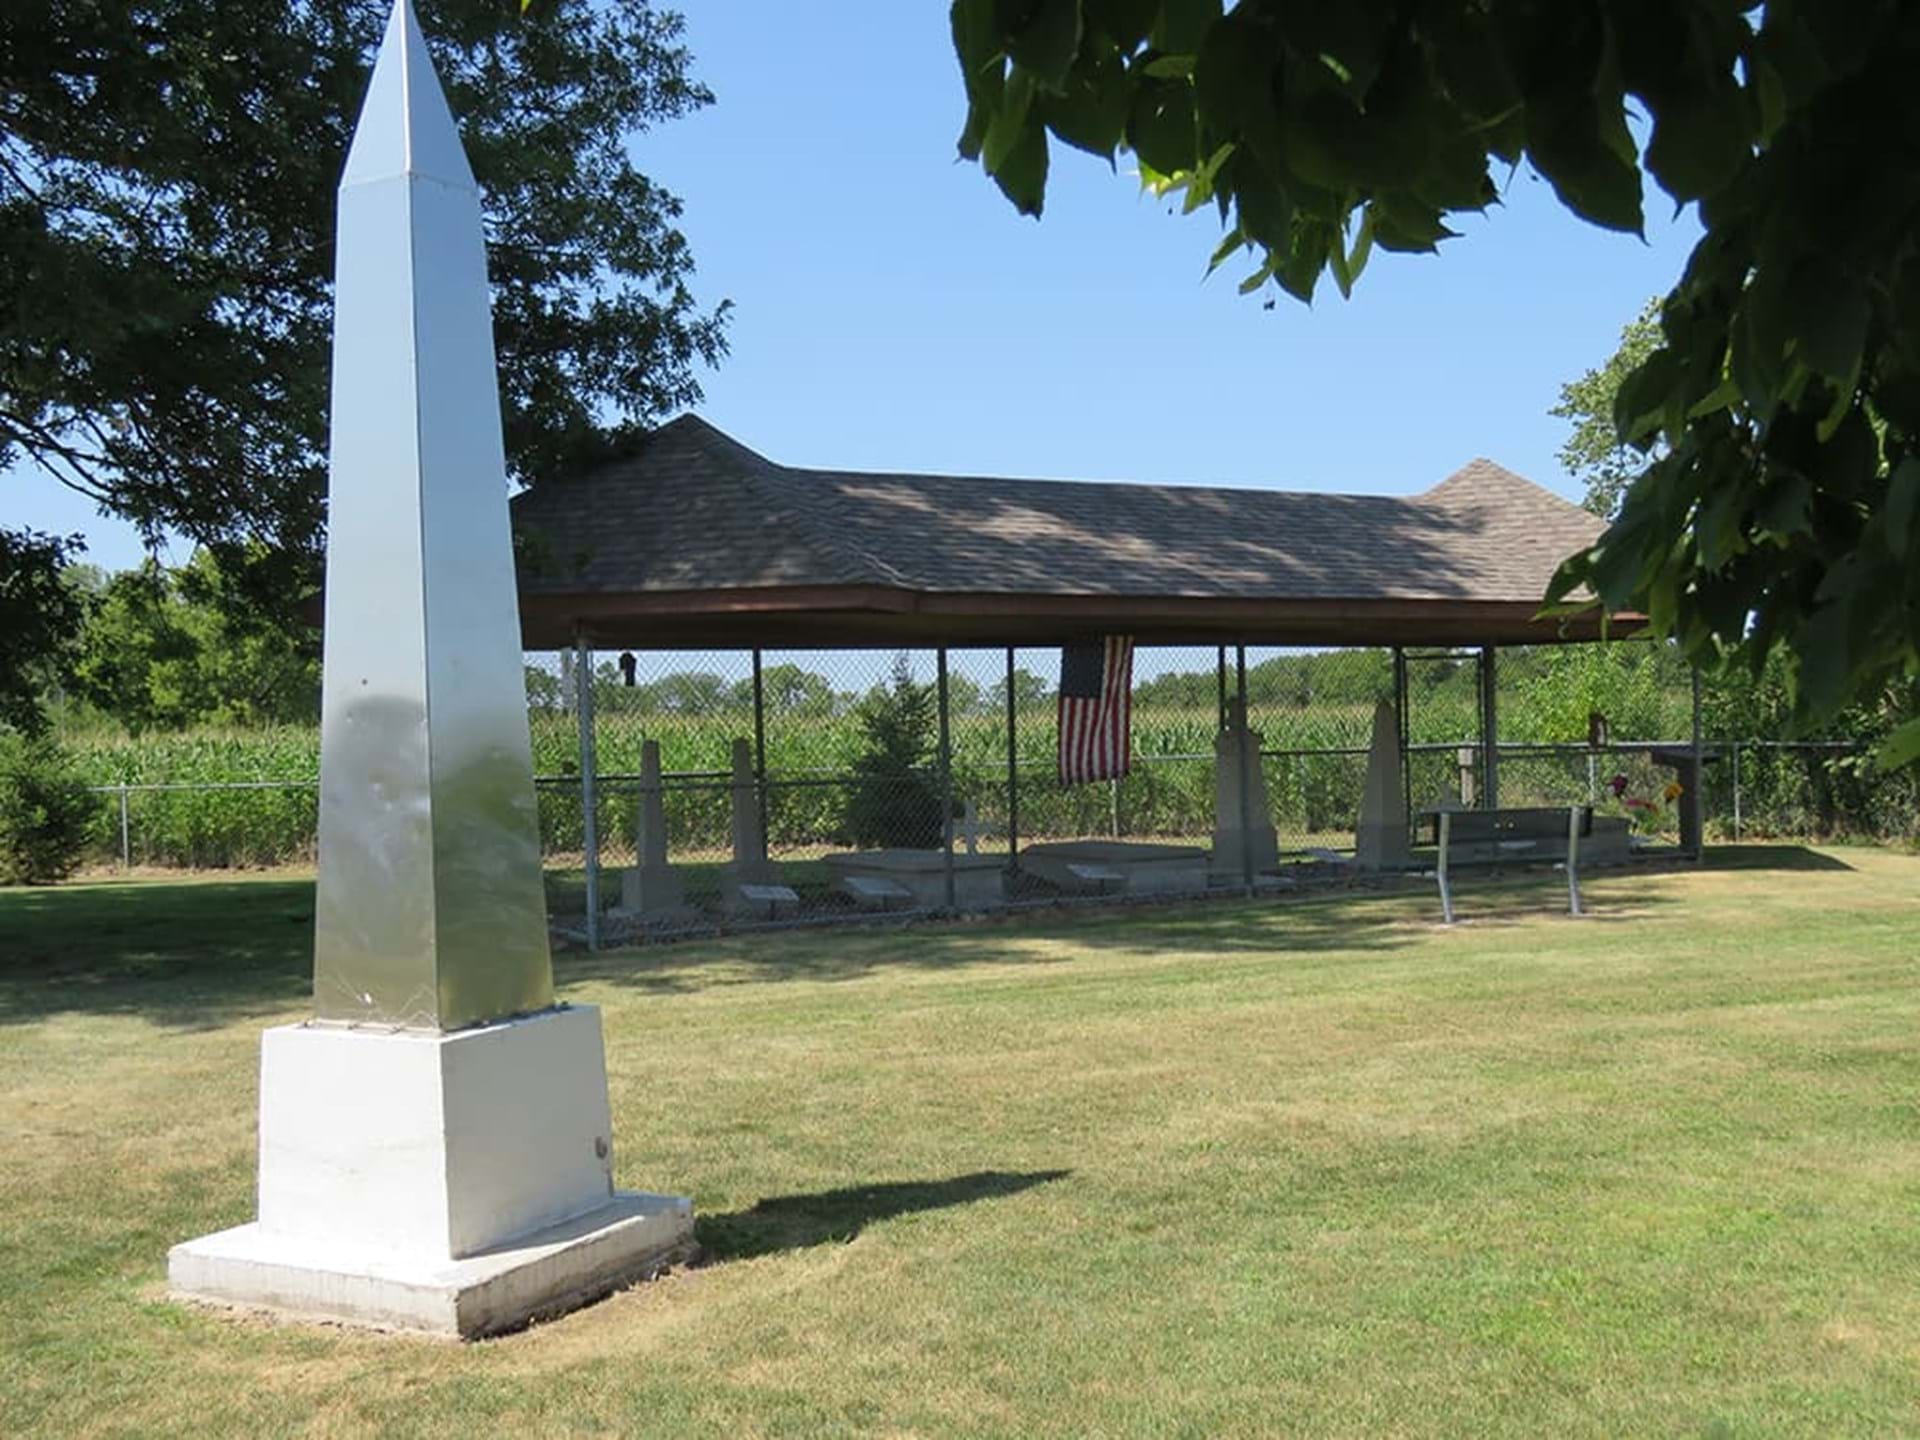 Chief Wapello Gravesite & Memorial Park